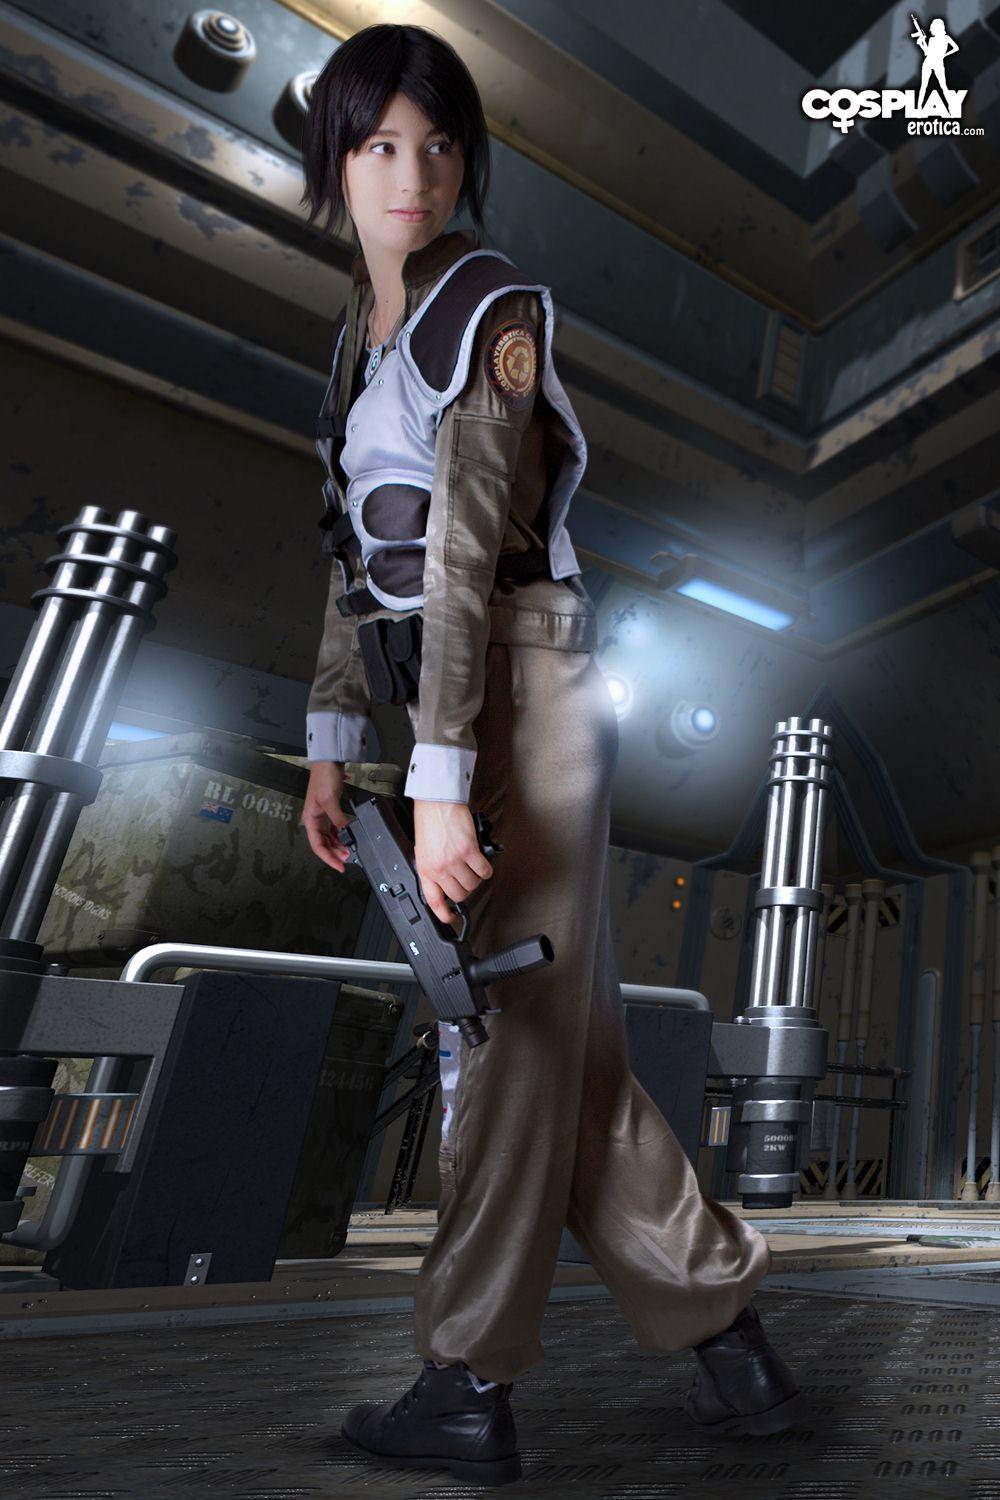 Bilder von heißen Cosplayer Stacy gekleidet für den Dienst auf Battlestar Galactica
 #60298192